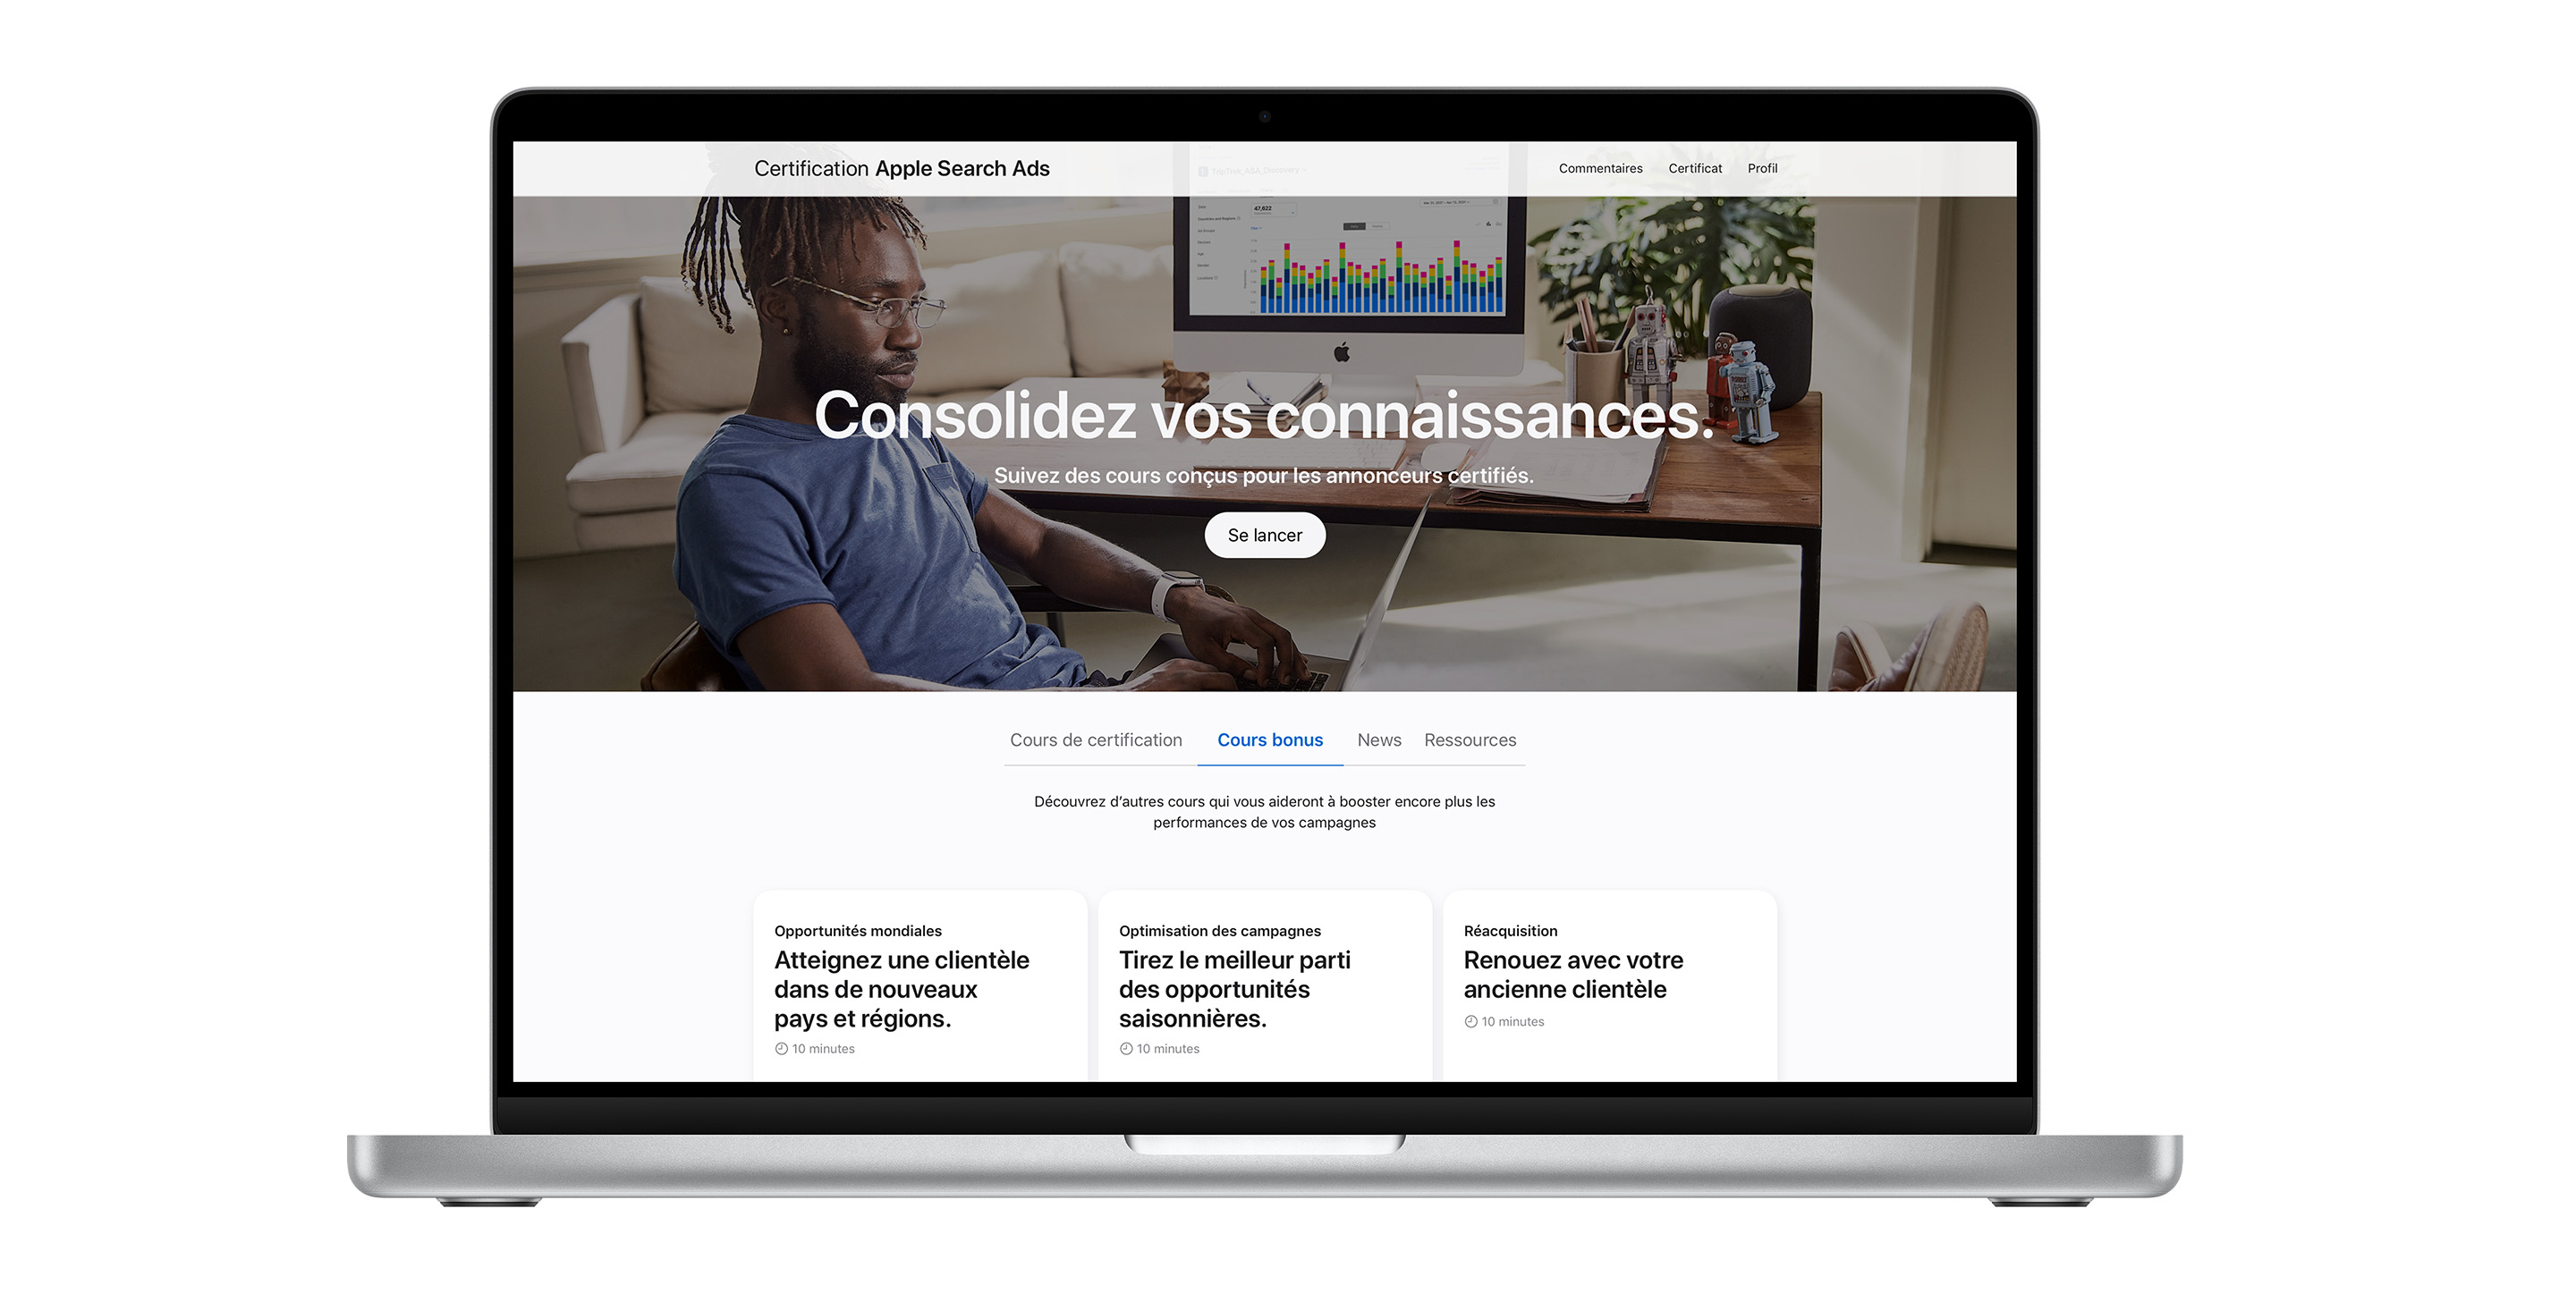 La page de certification Apple Search Ads affichant l’onglet des cours bonus. Il contient trois leçons pour améliorer les performances de vos campagnes.